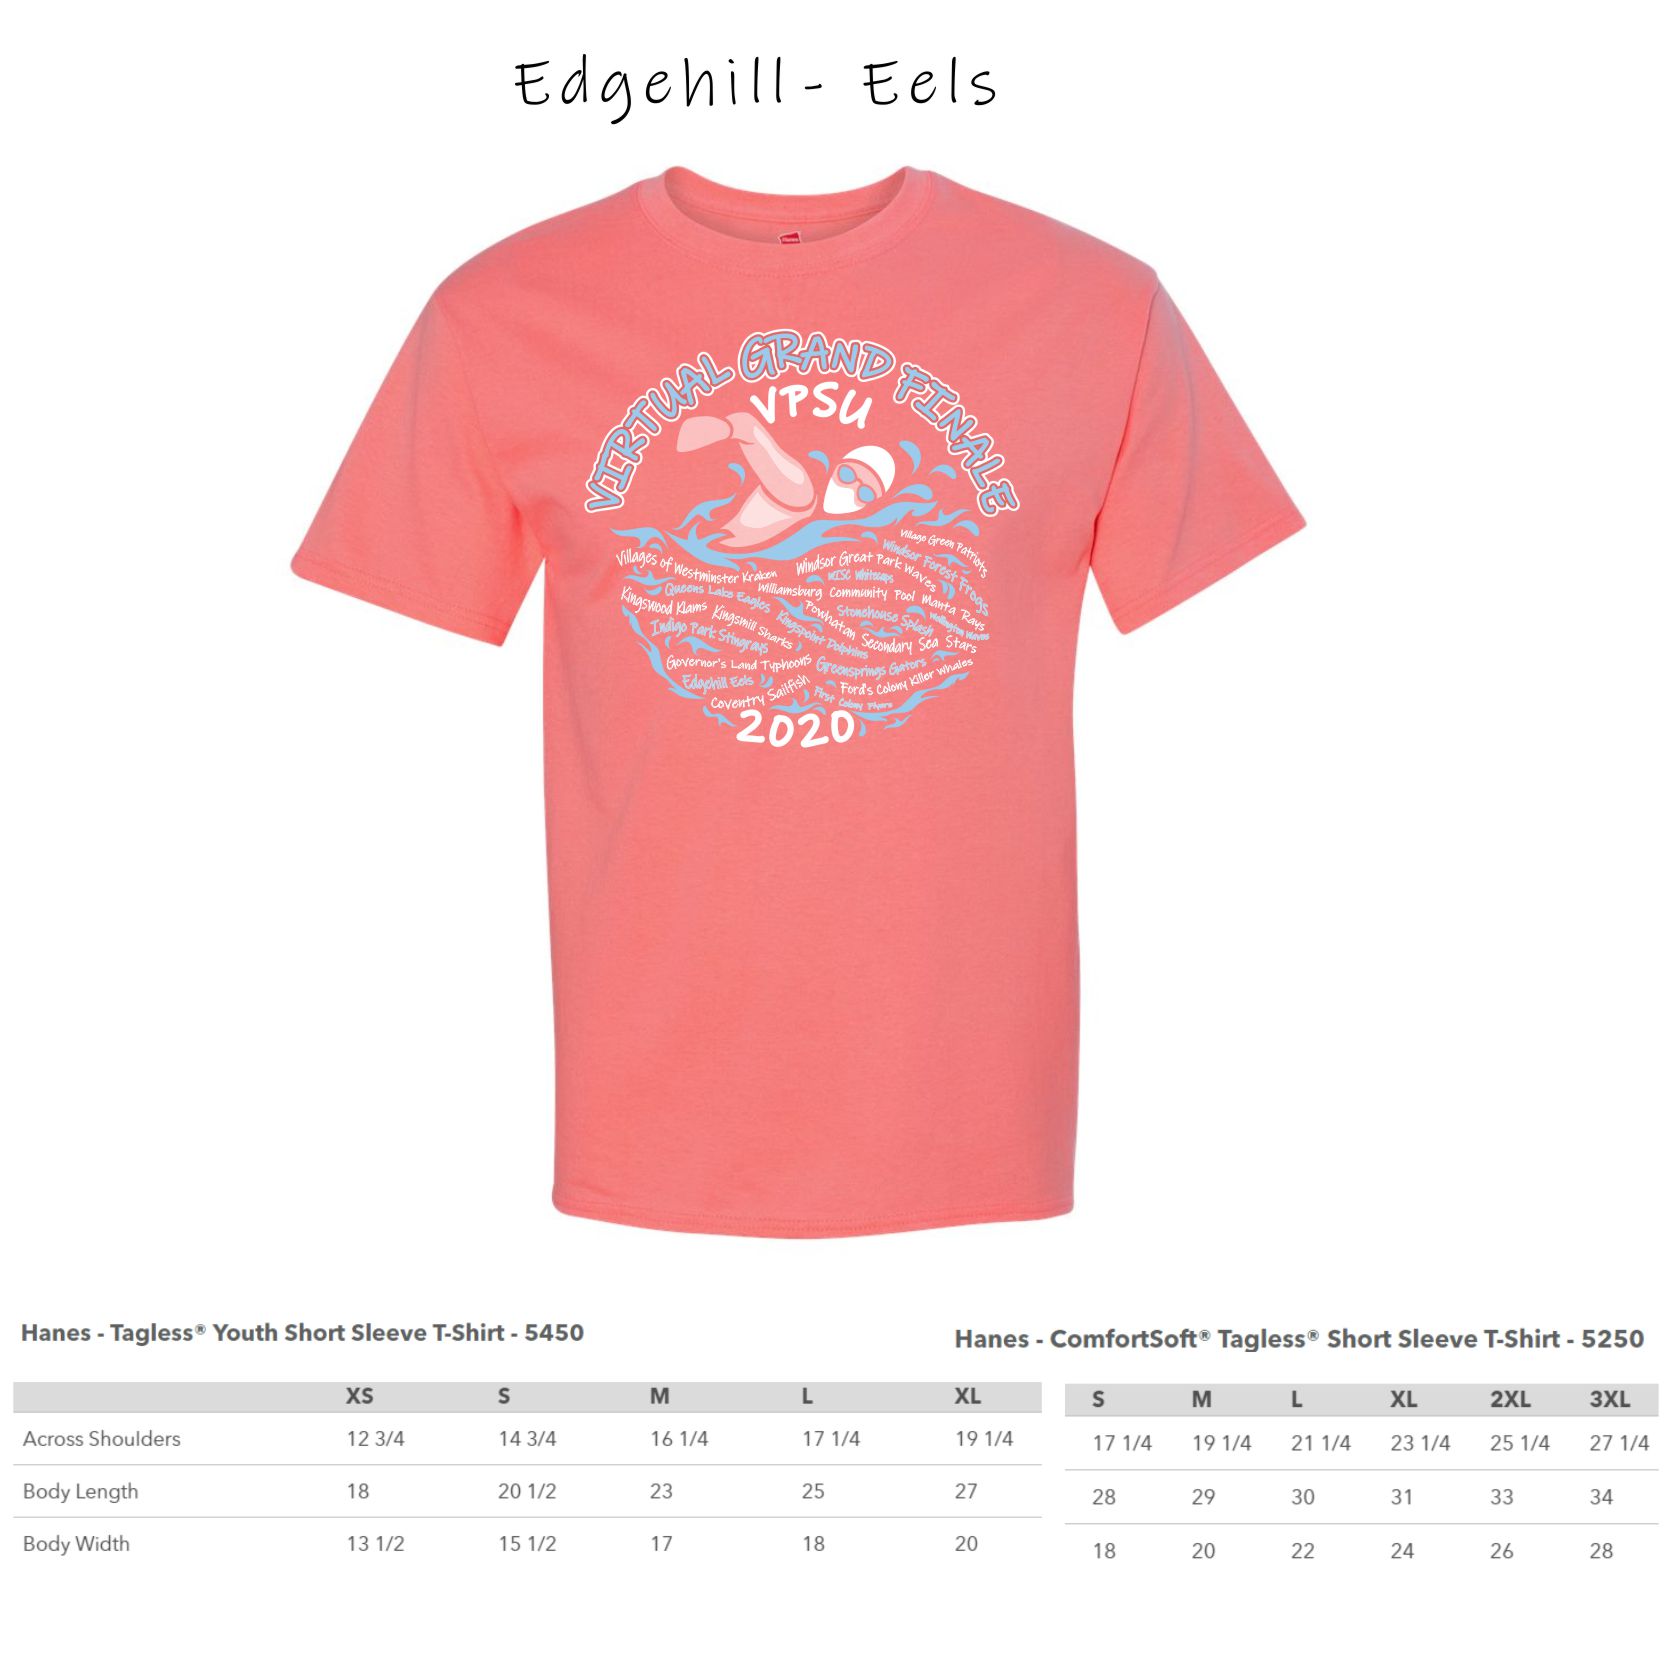 1 - Edgehill Eels